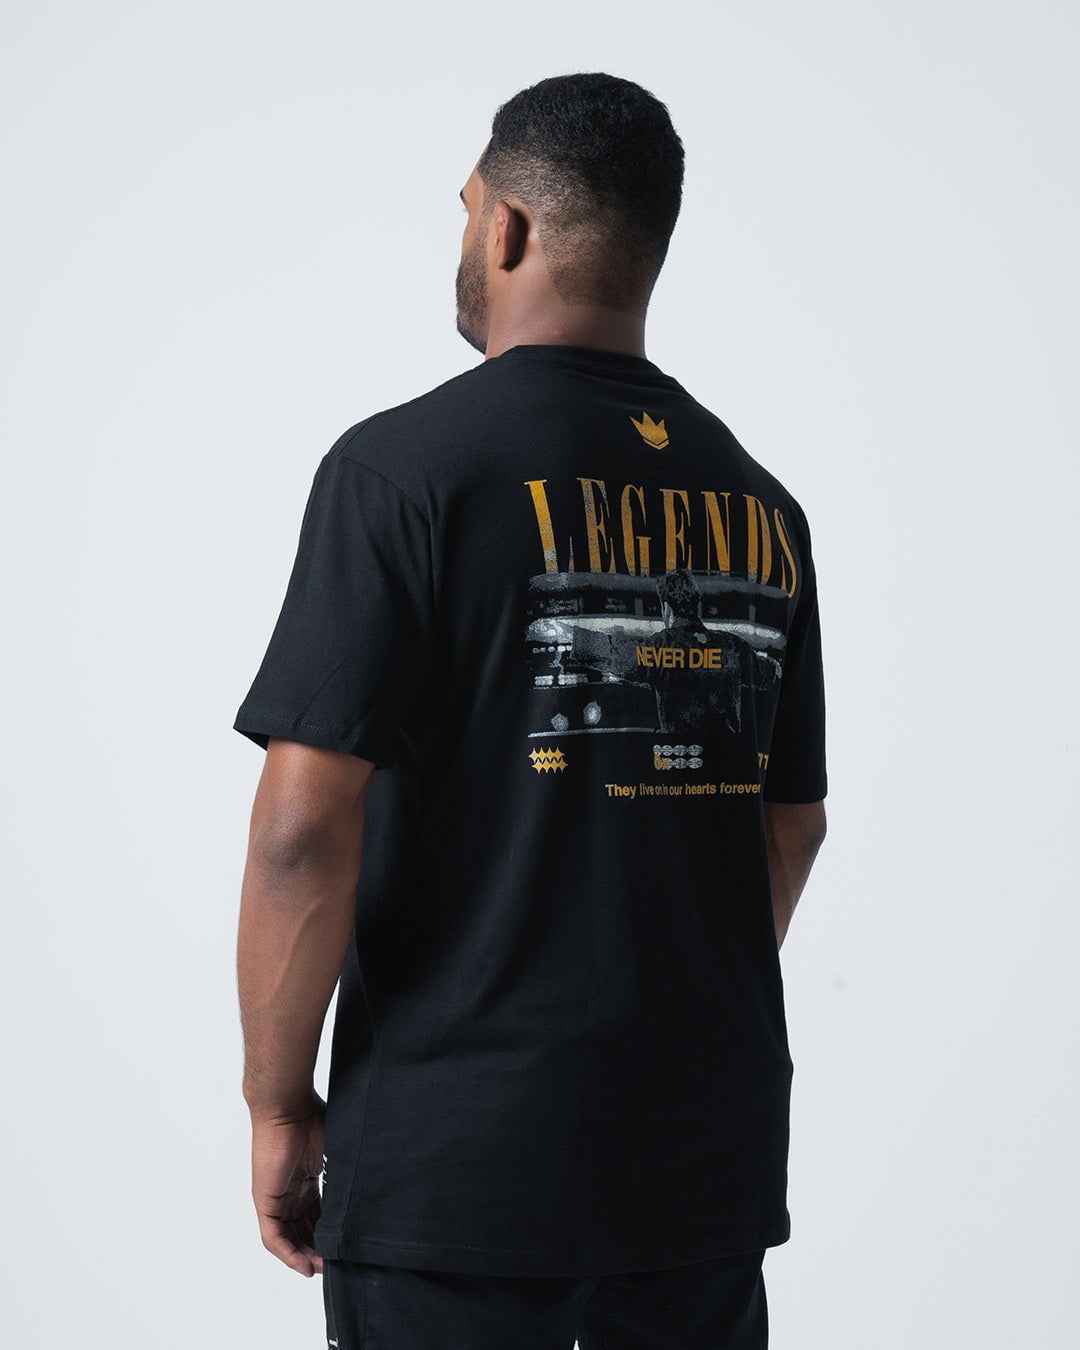 Legends Never Die - Shirtoid